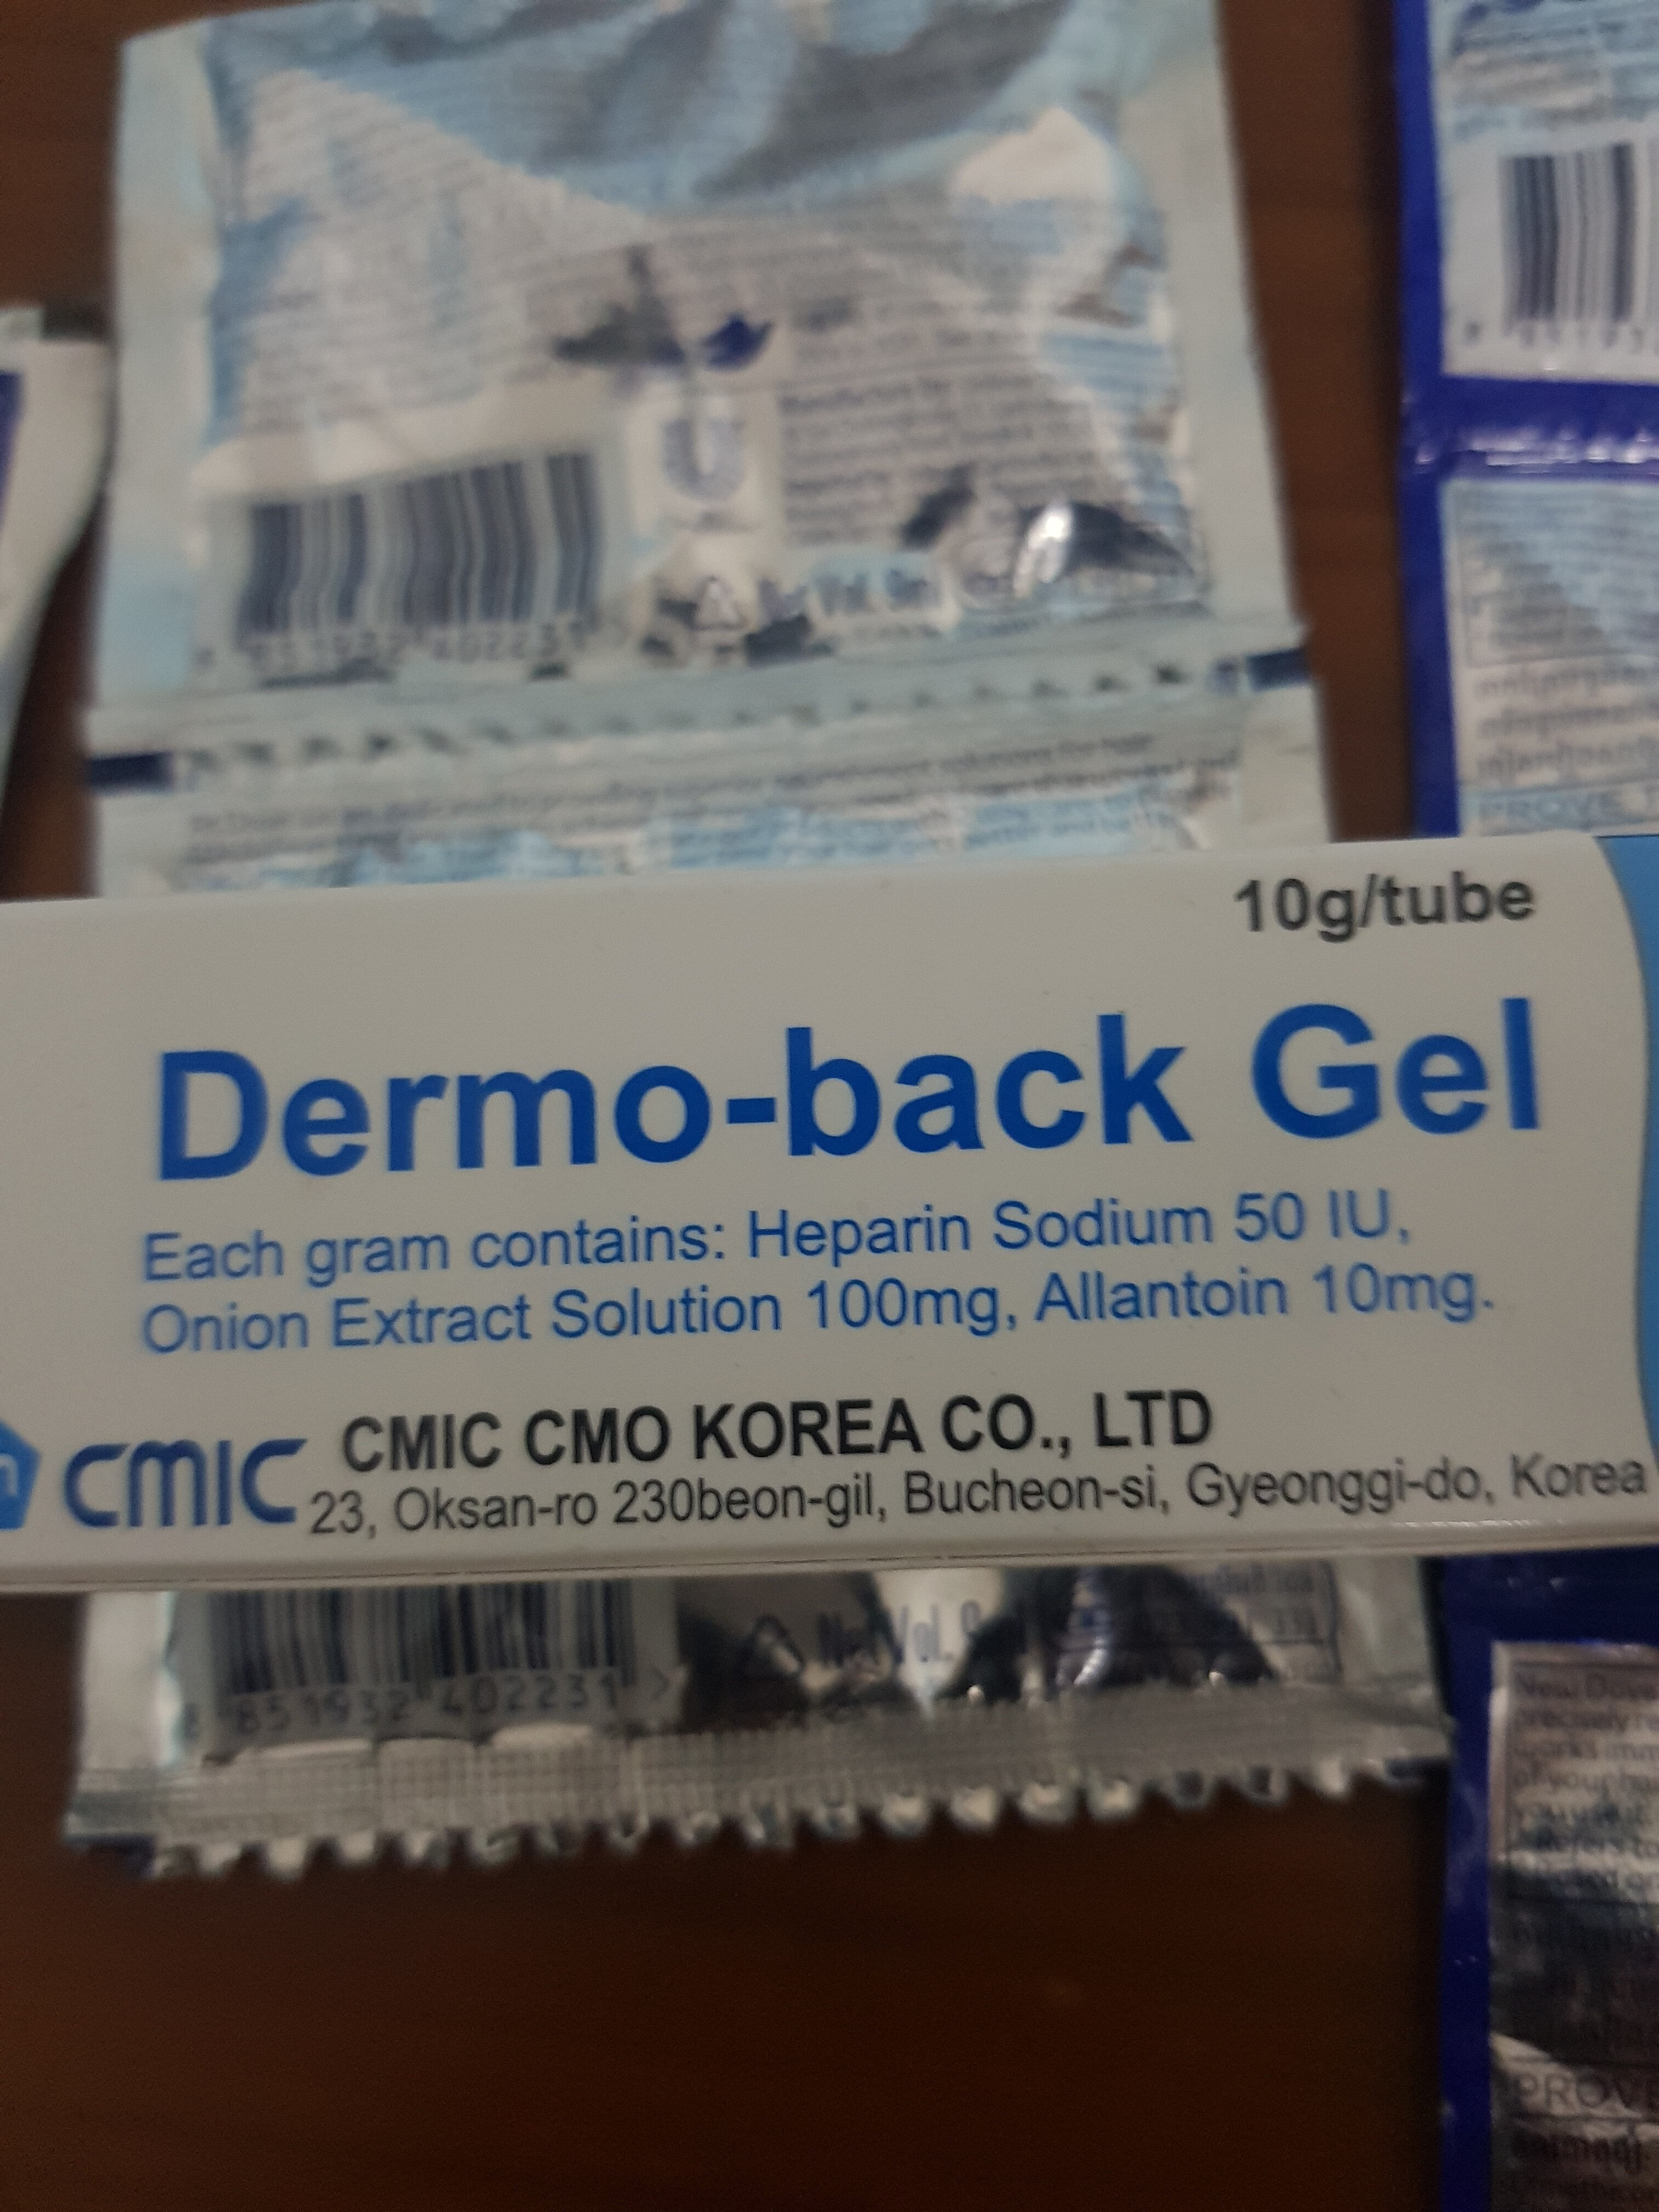 dermo-back gel - Product - en